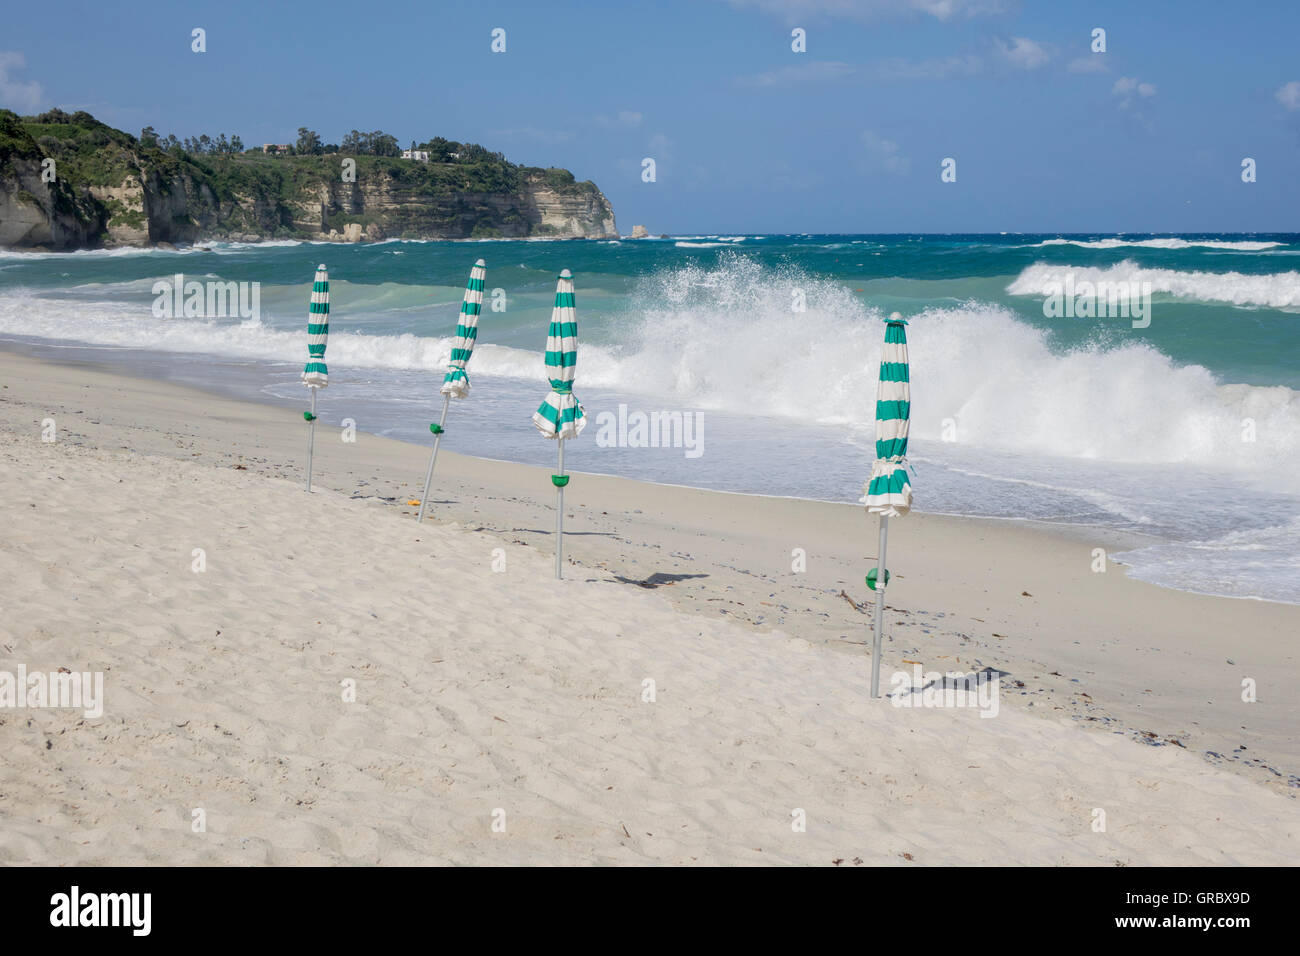 Spiaggia di sabbia bianca, blu cielo, onde, chiuso verde e bianco sole sfumature, scogliere con alcuni alberi in background. Tropea in Calabria, Italia Foto Stock